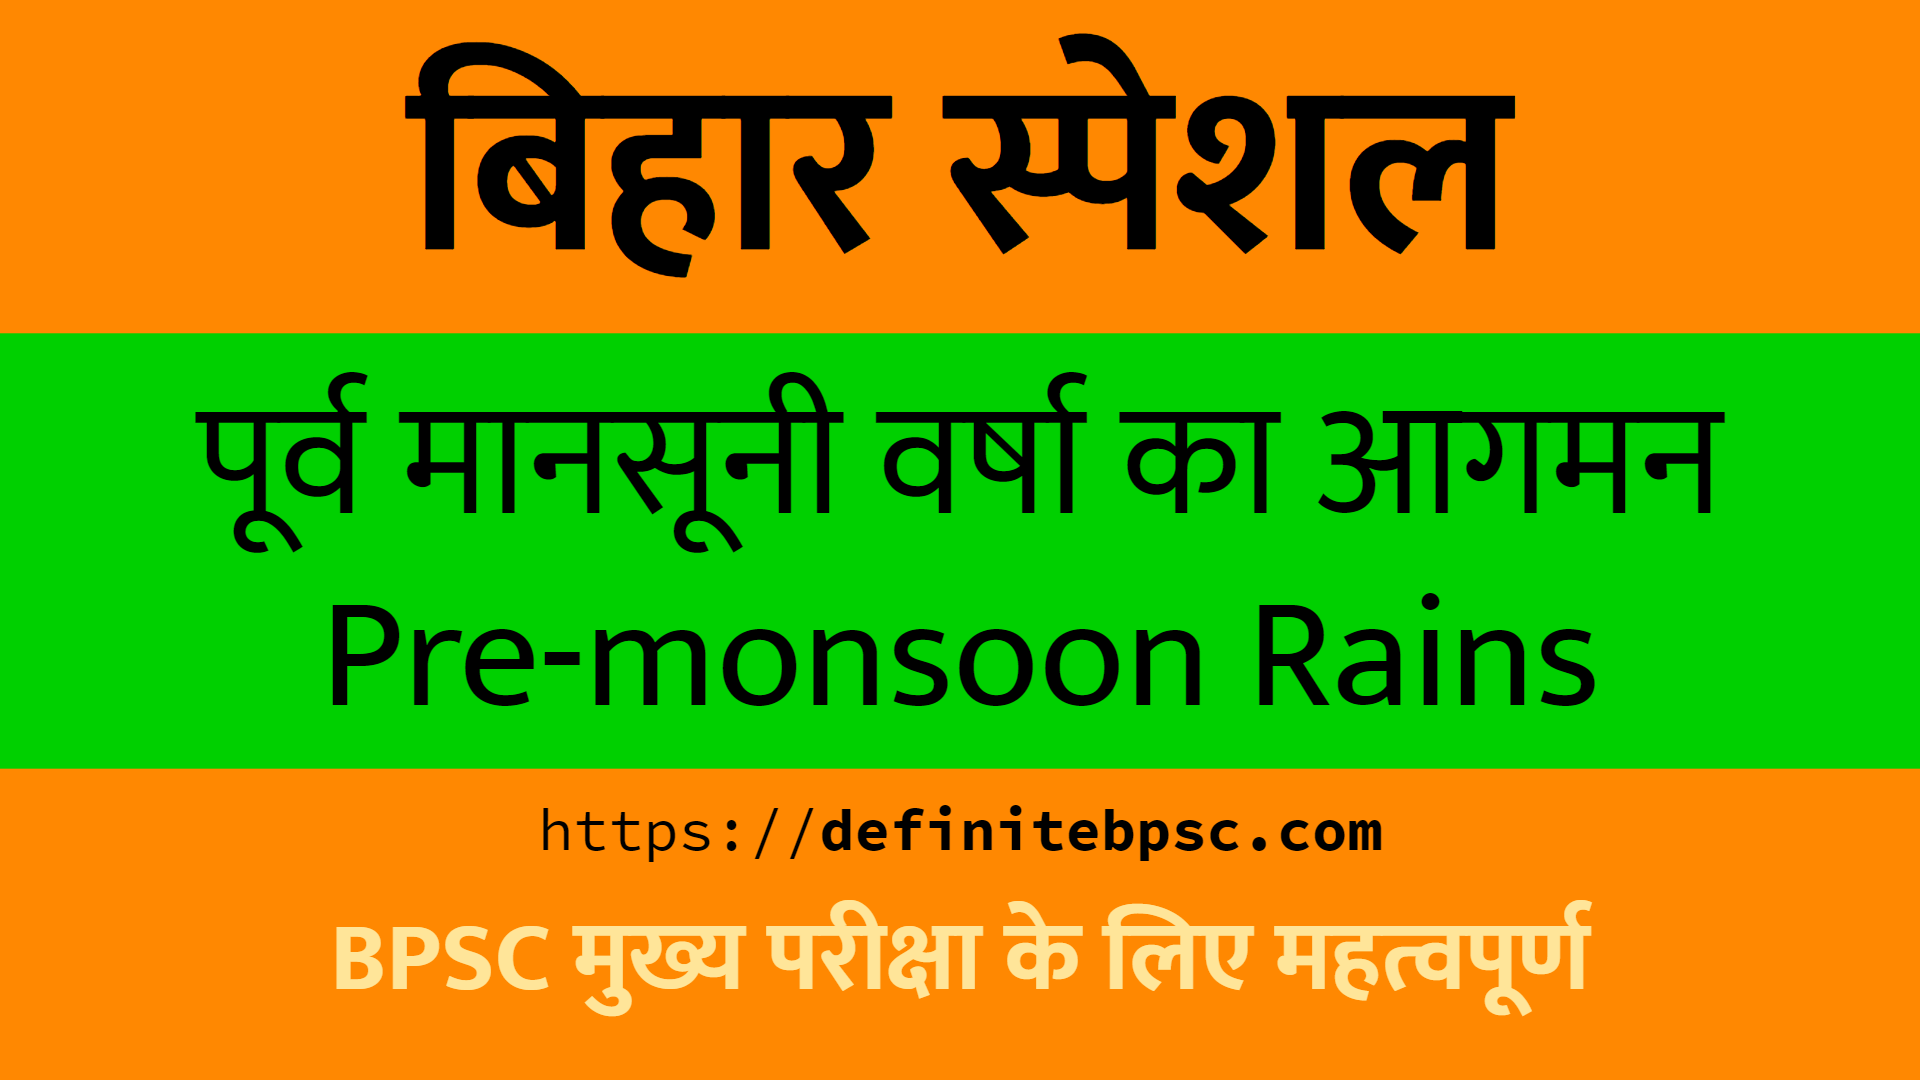 बिहार पर पूर्व मानसूनी वर्षा का आगमन (Arrival of Pre-monsoon rains in Bihar)